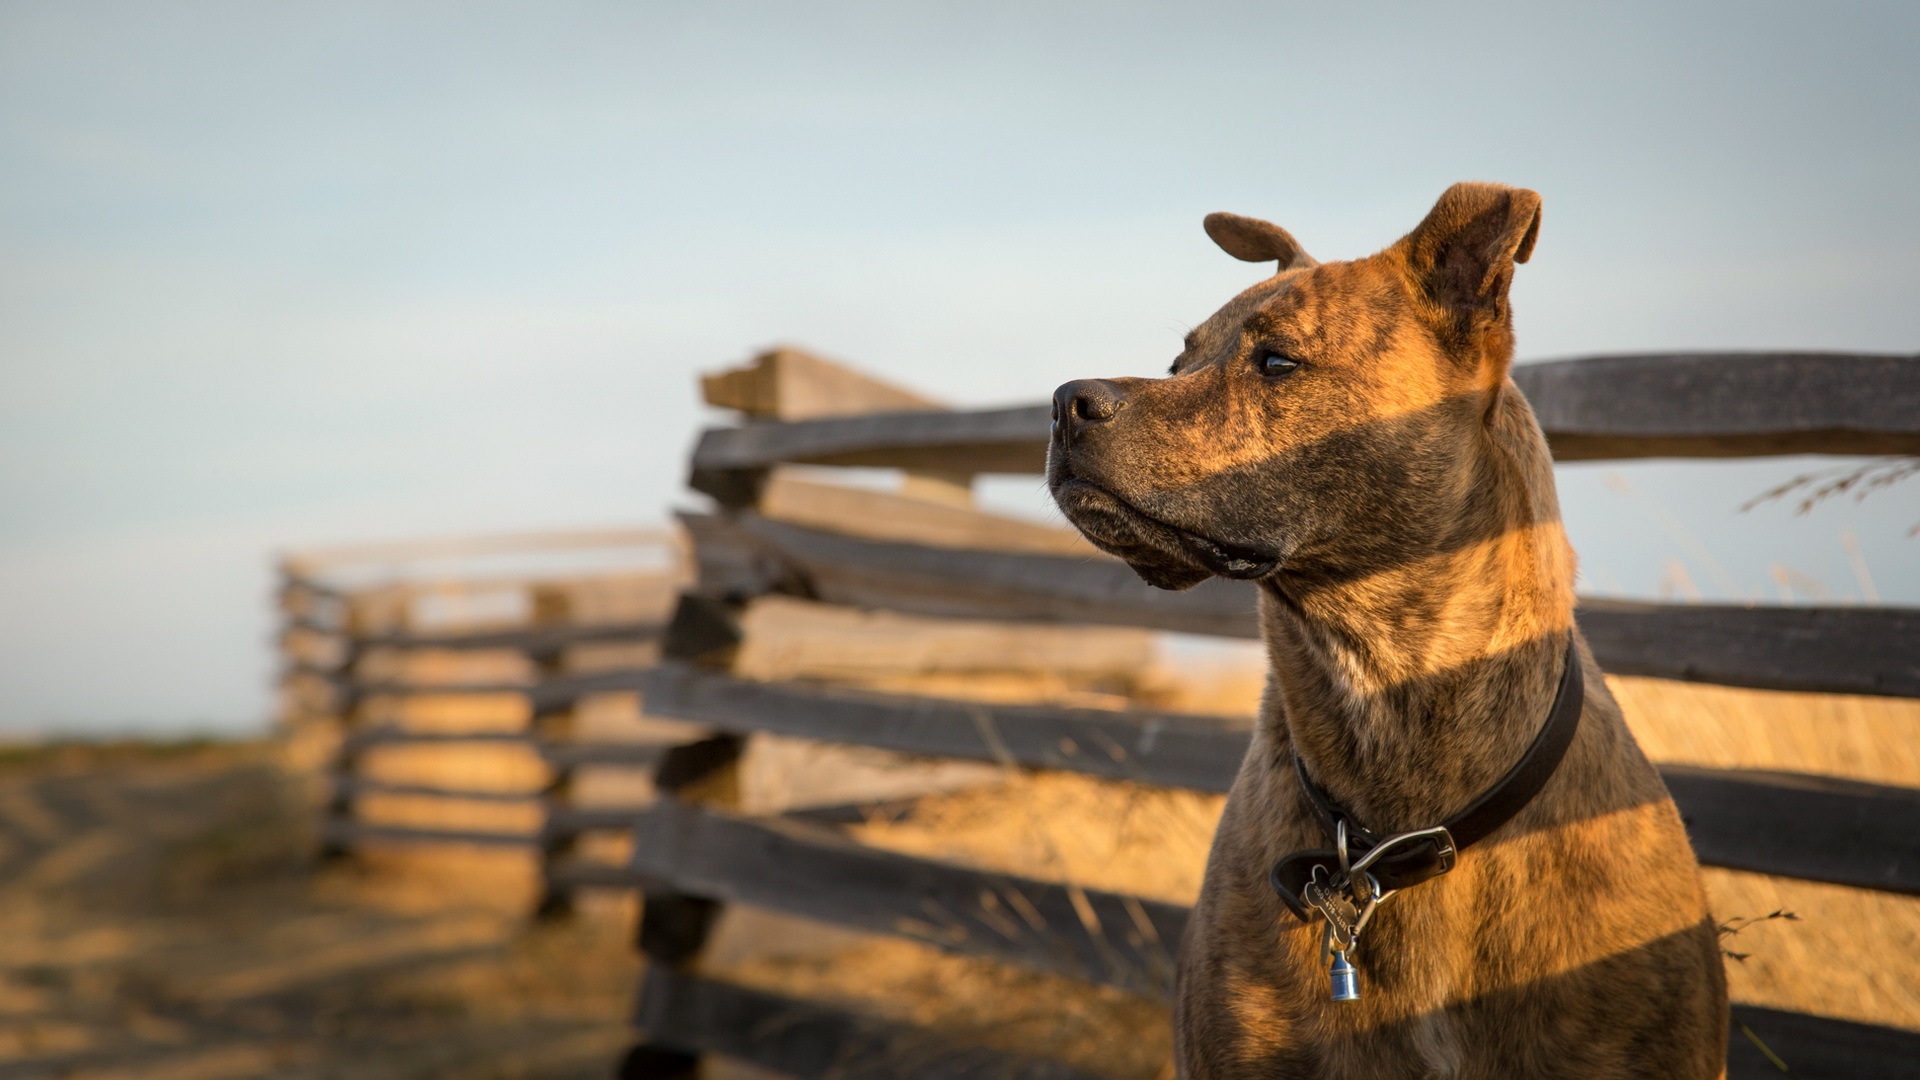 Descarga gratuita de fondo de pantalla para móvil de Animales, Perros, Perro, Staffordshire Bull Terrier.